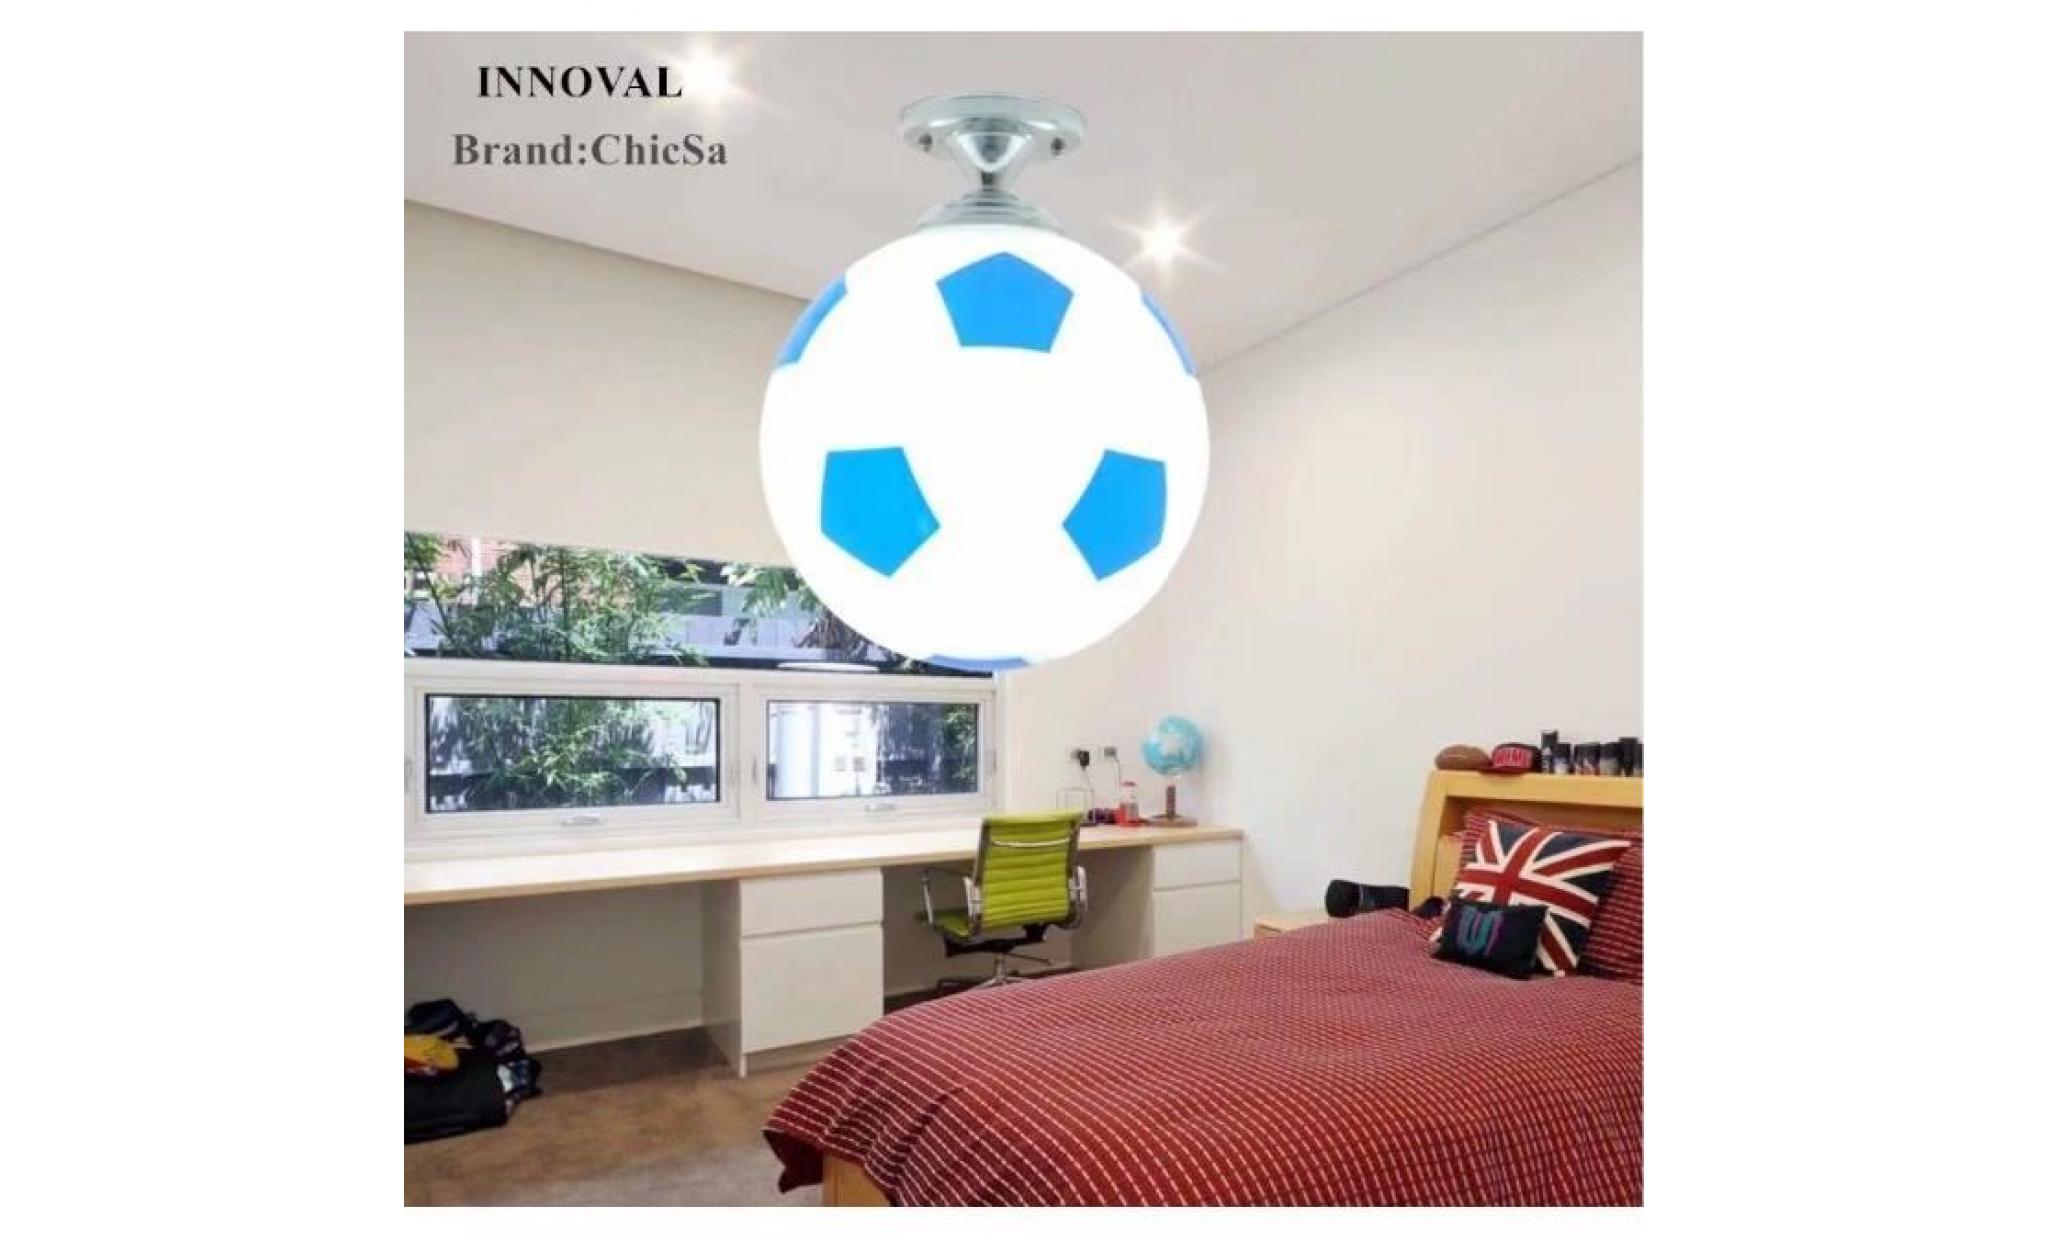 mode désign football plafond applique bleu créatif chambre d'enfant bar verre applique nouvelle chambre des garçons applique